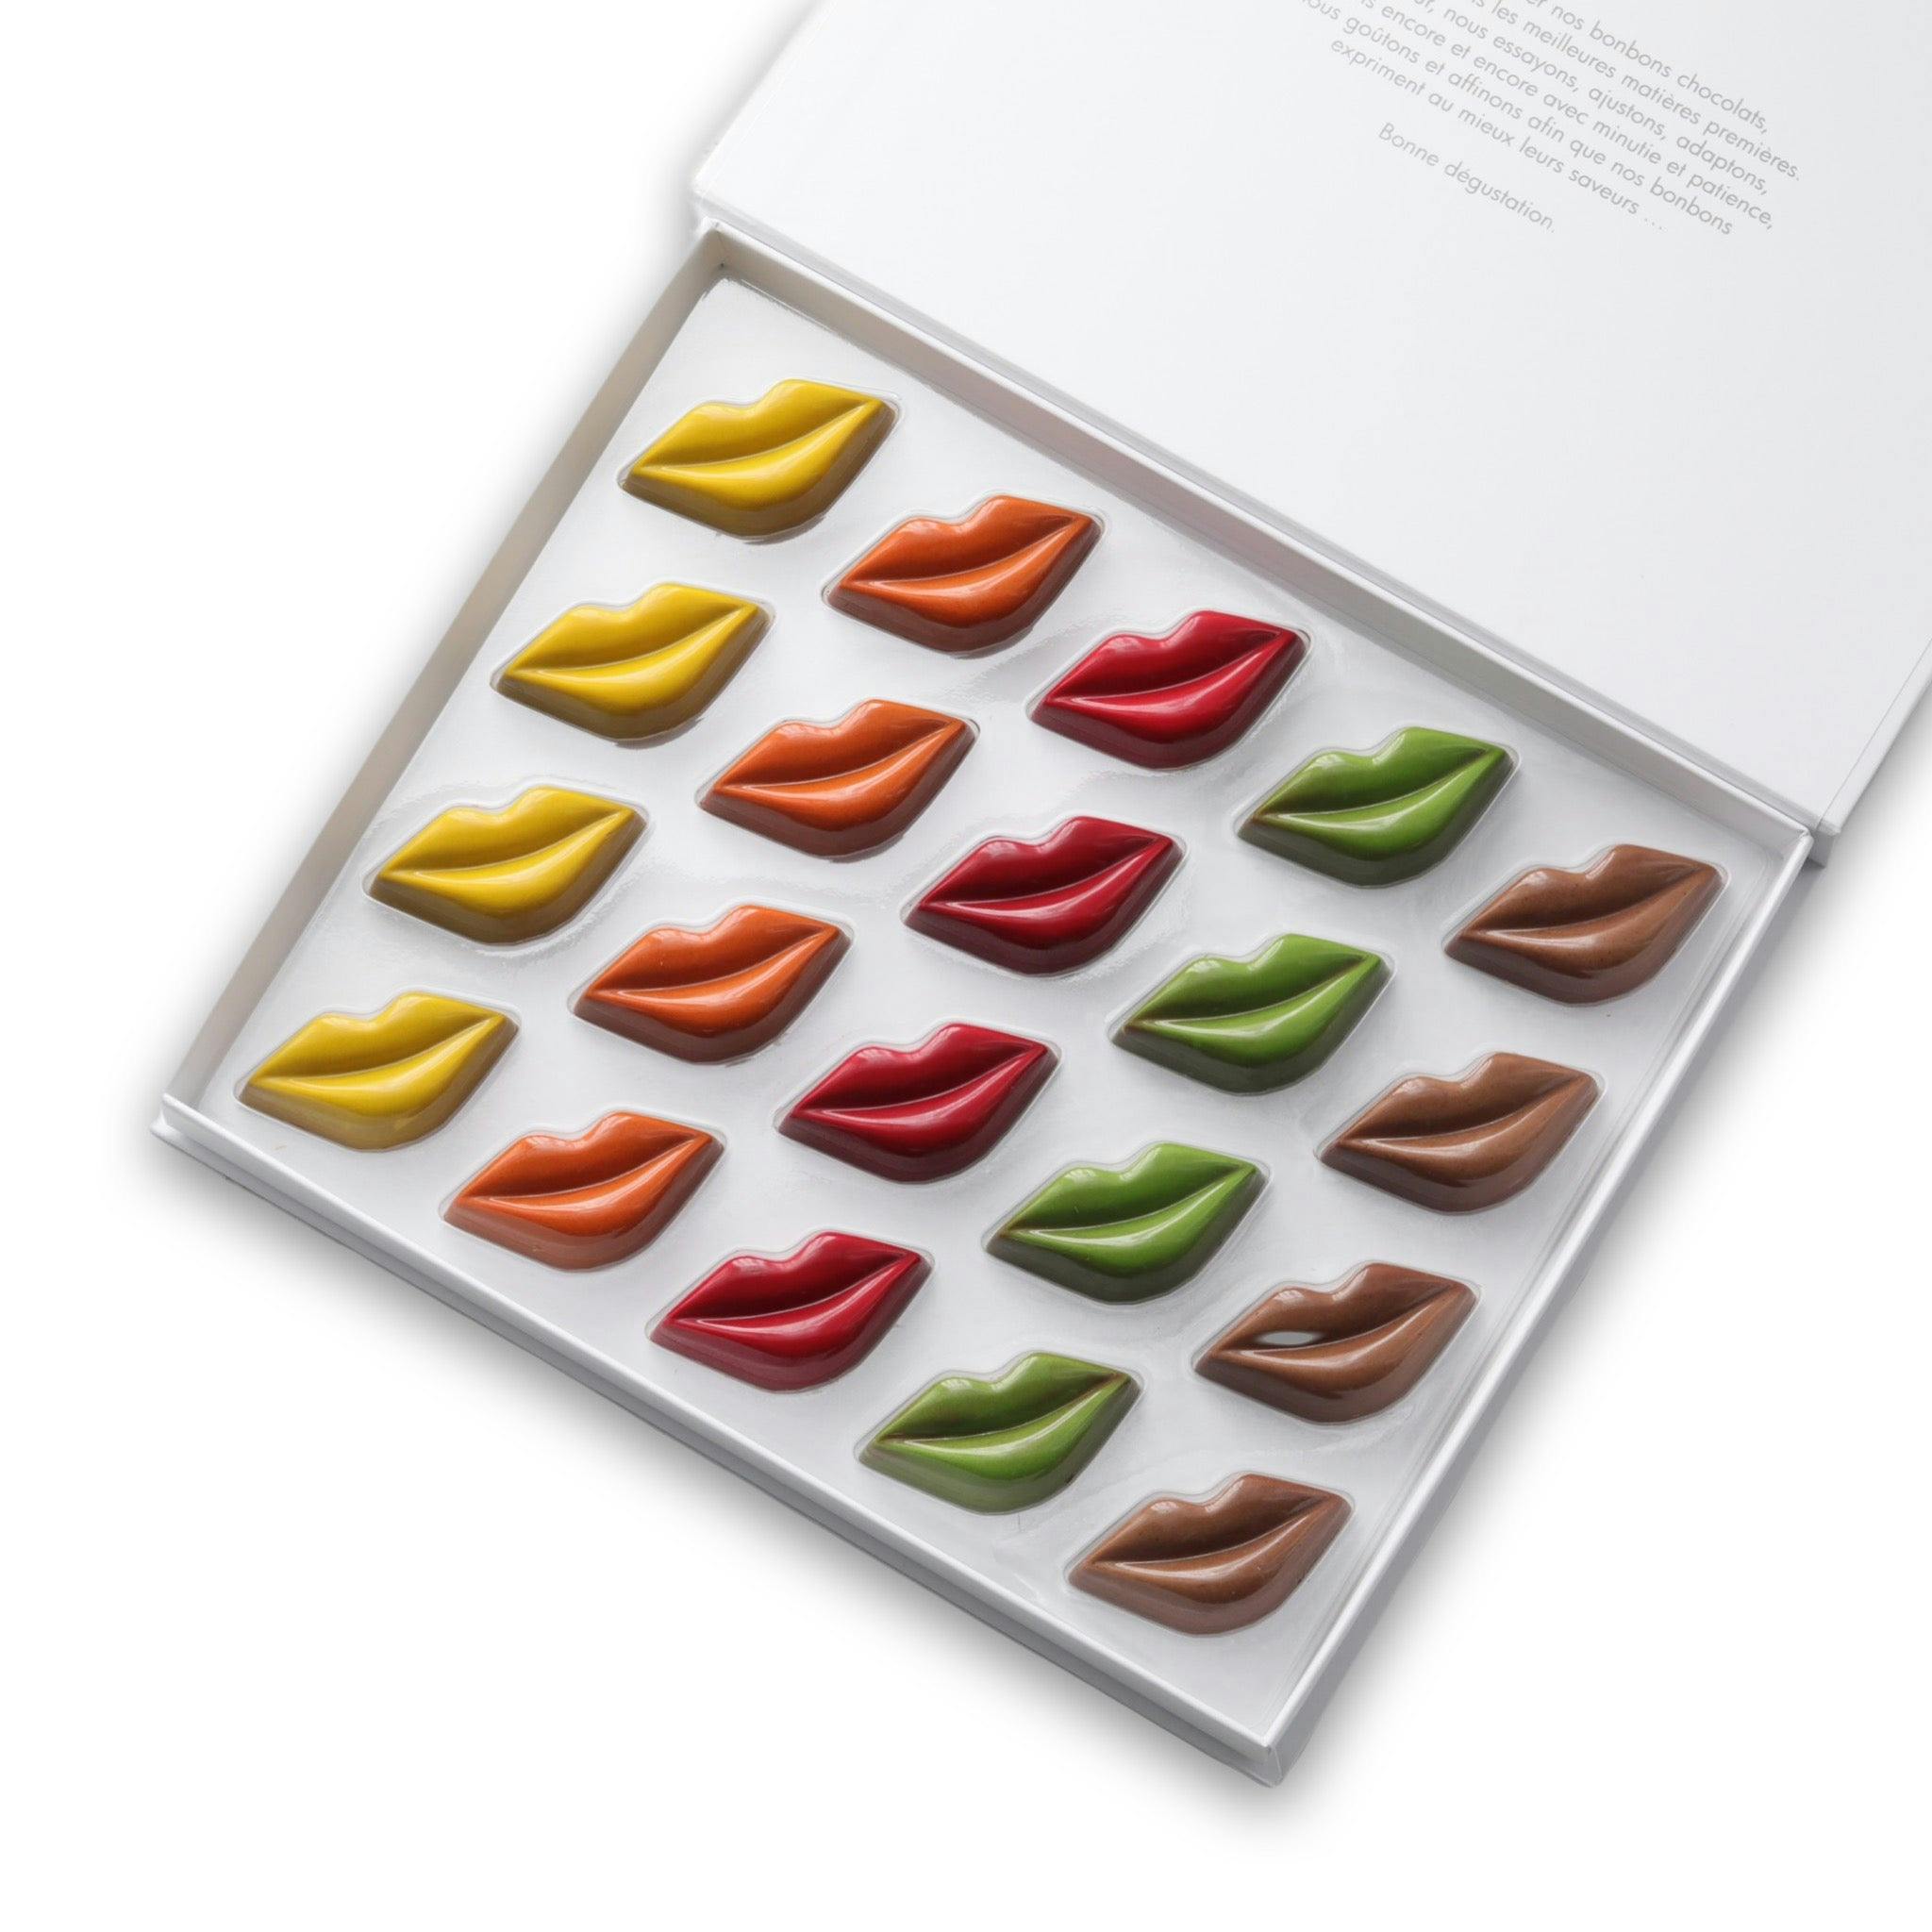 Les Baisers des Sablaises disponible en coffrets de 6/10/20 chocolats - Vincent Vallée world champion chocolatier